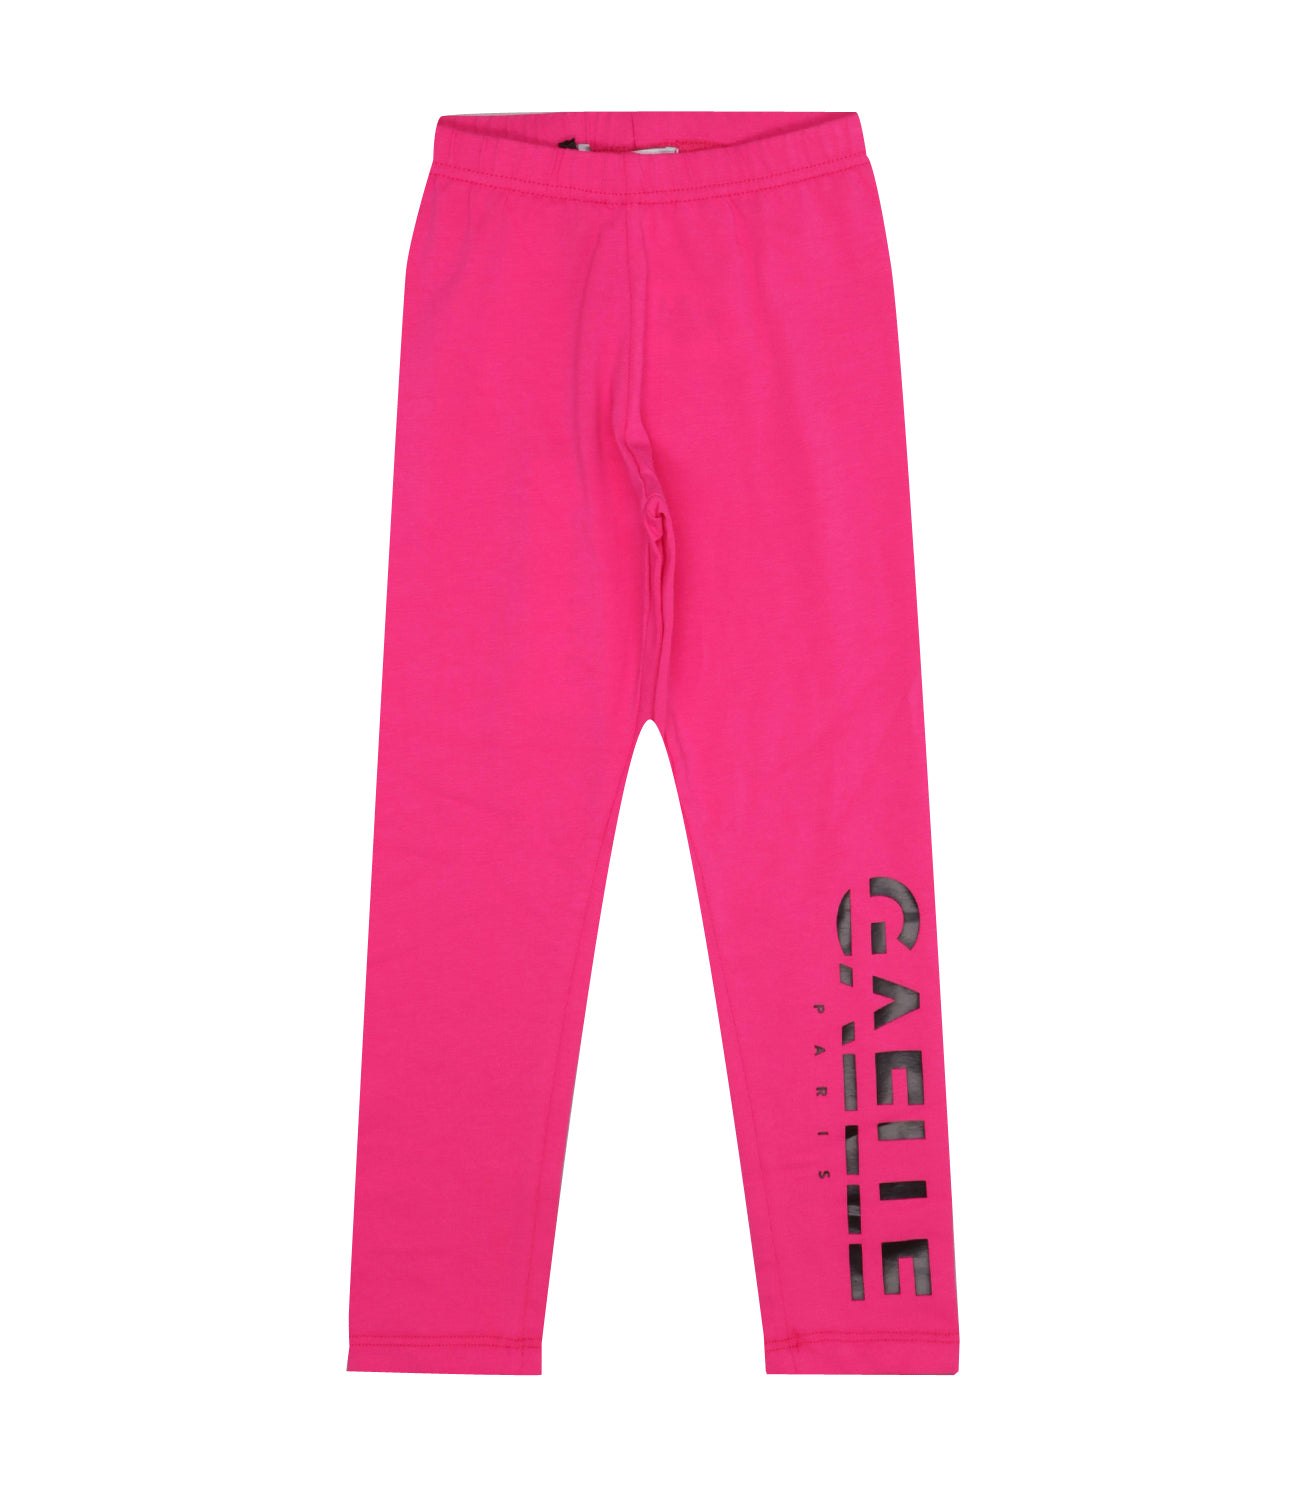 Gaelle Paris Leggings in Pink